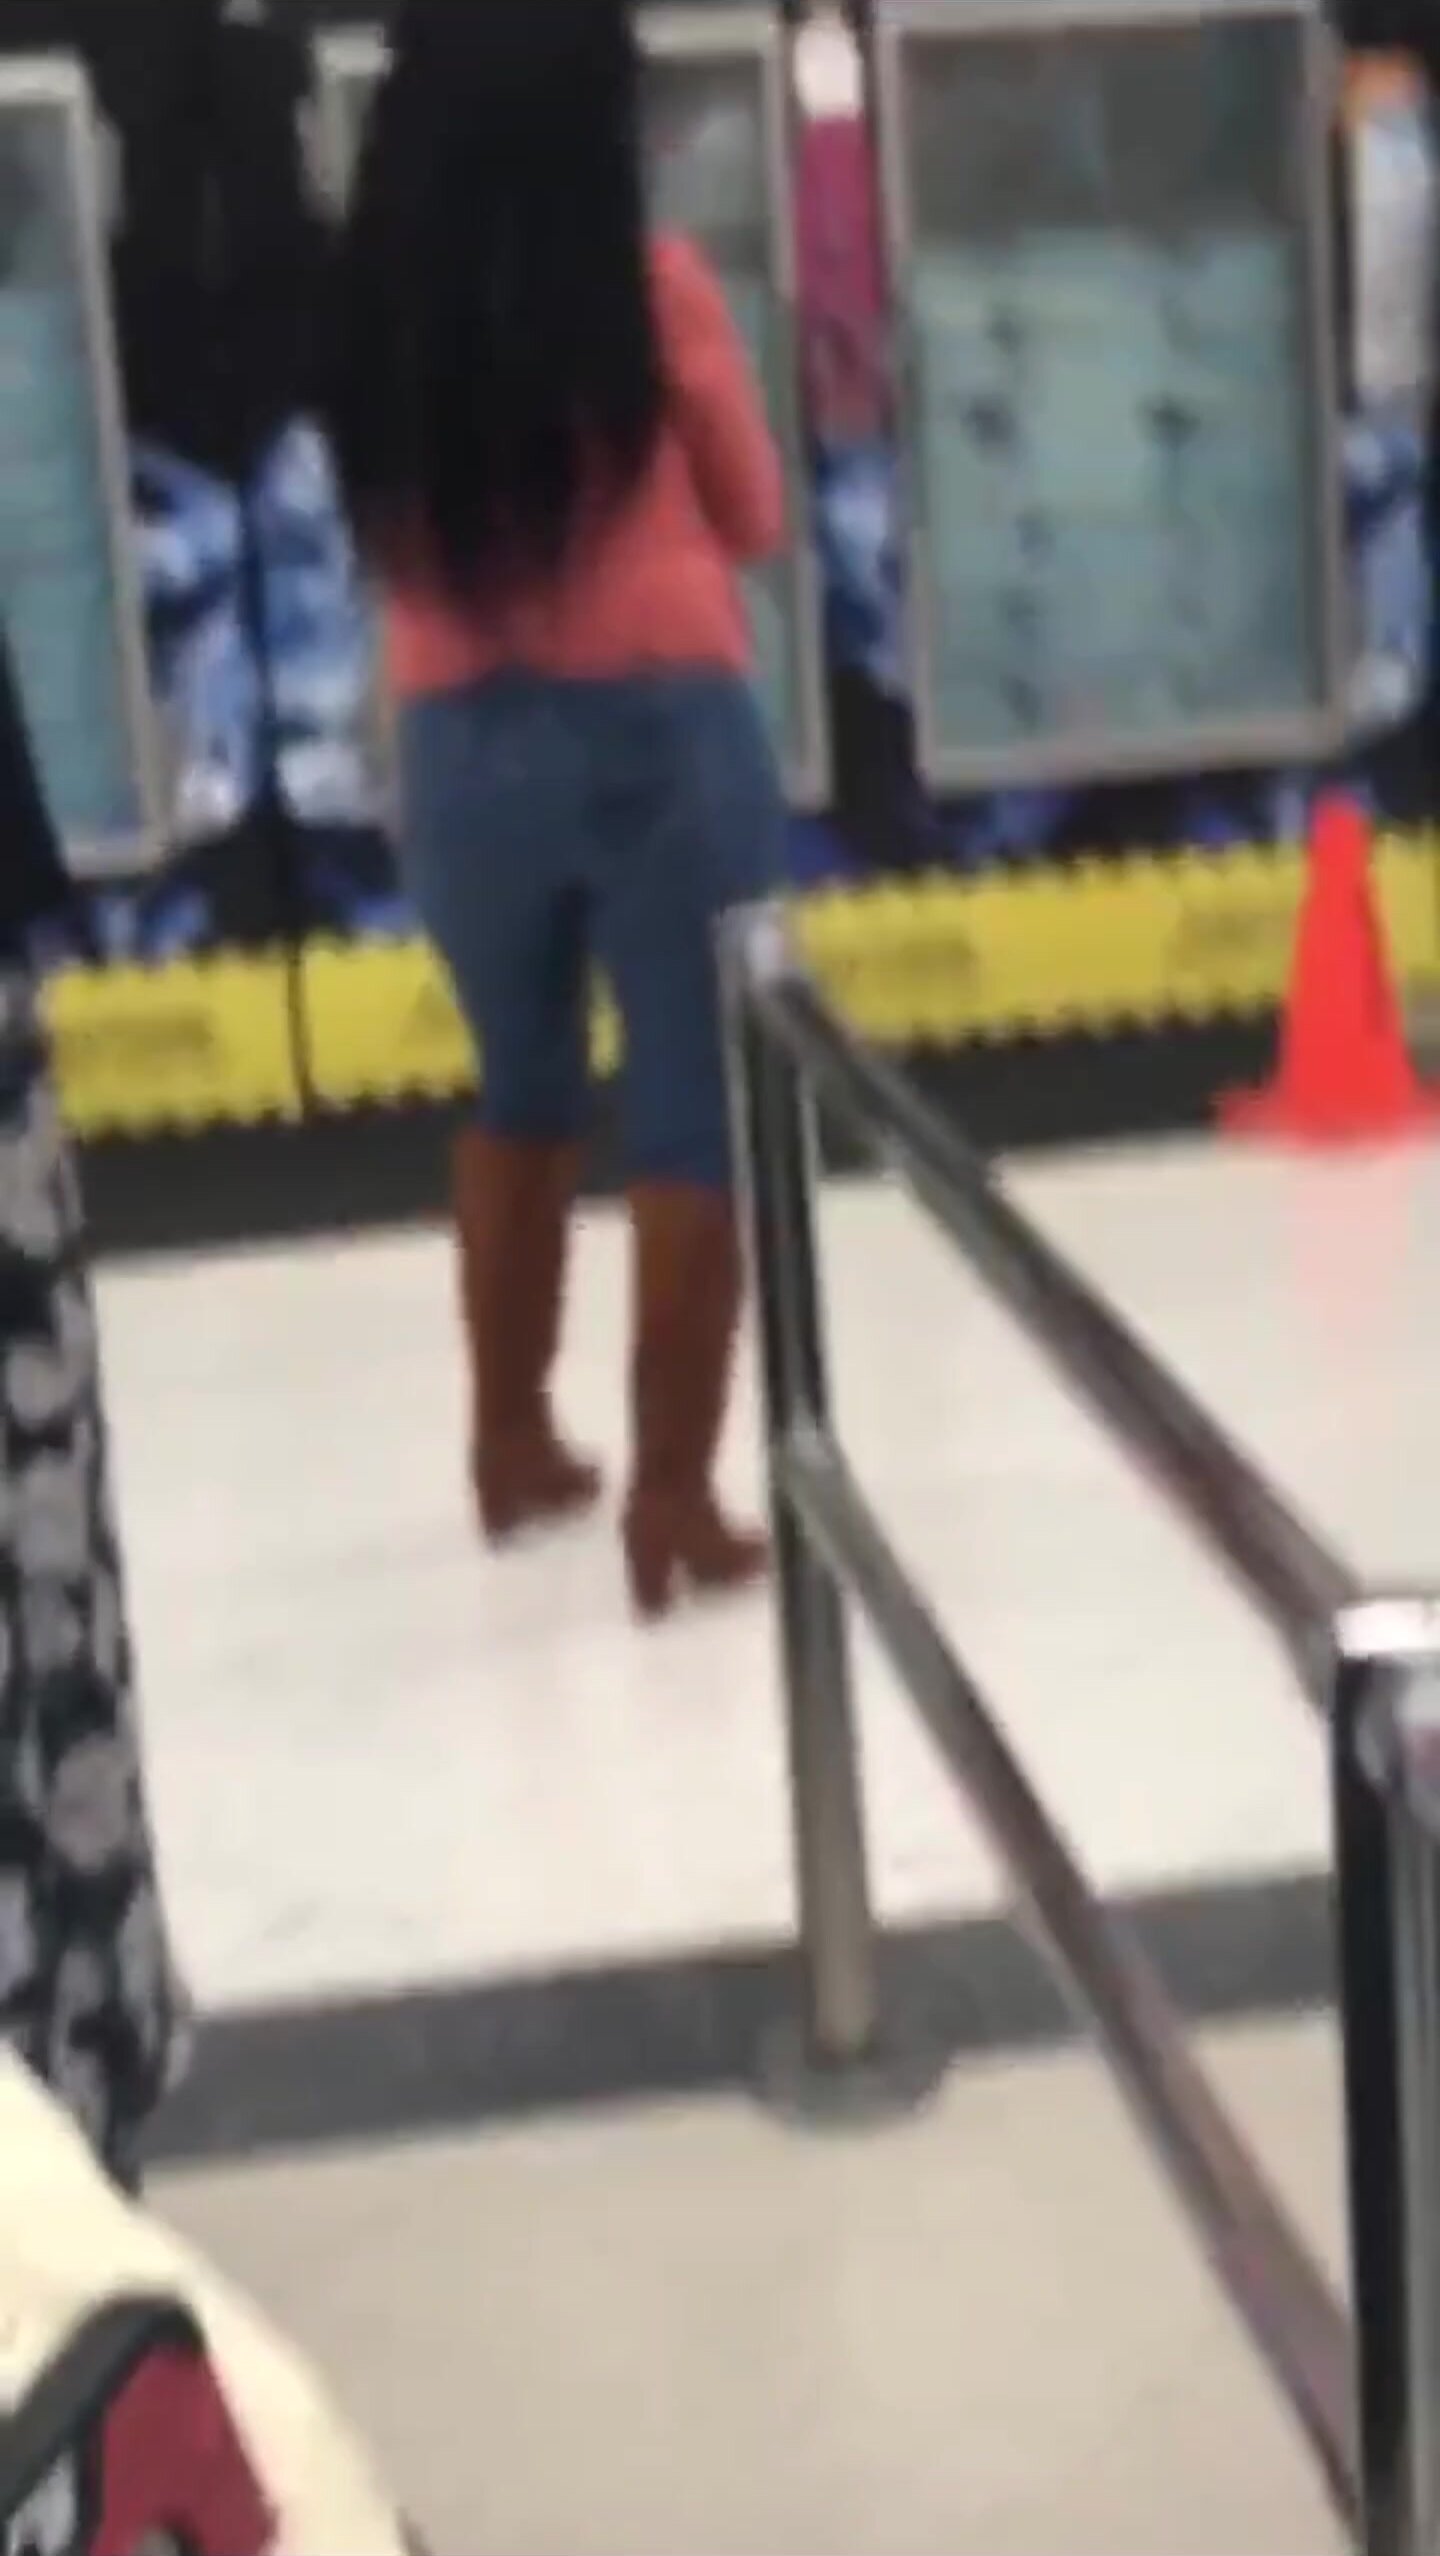 Woman wet herself in public